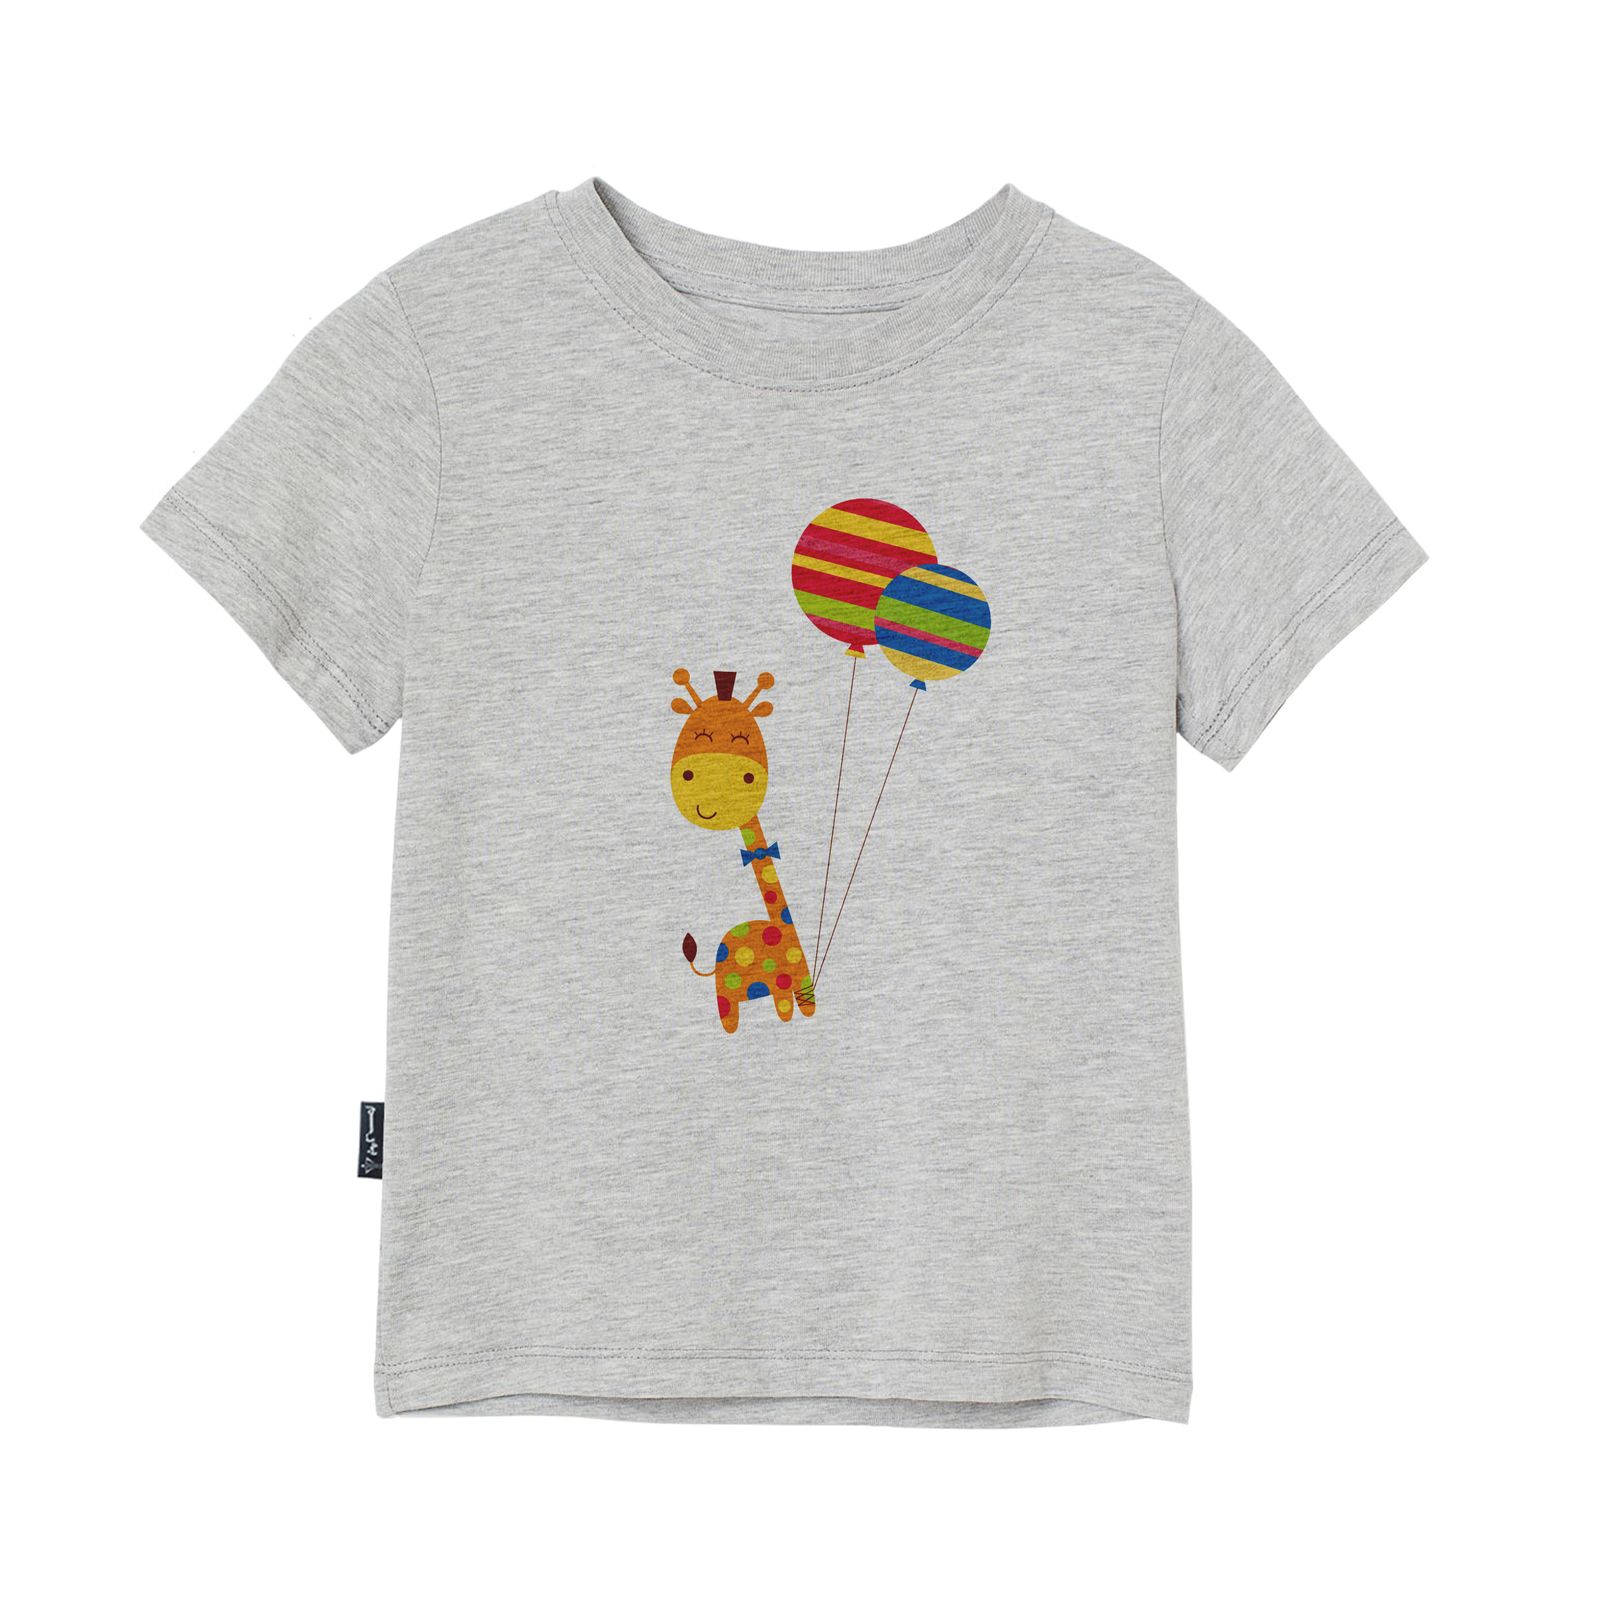 تی شرت آستین کوتاه دخترانه به رسم مدل زرافه و بادکنک کد 1114 -  - 3